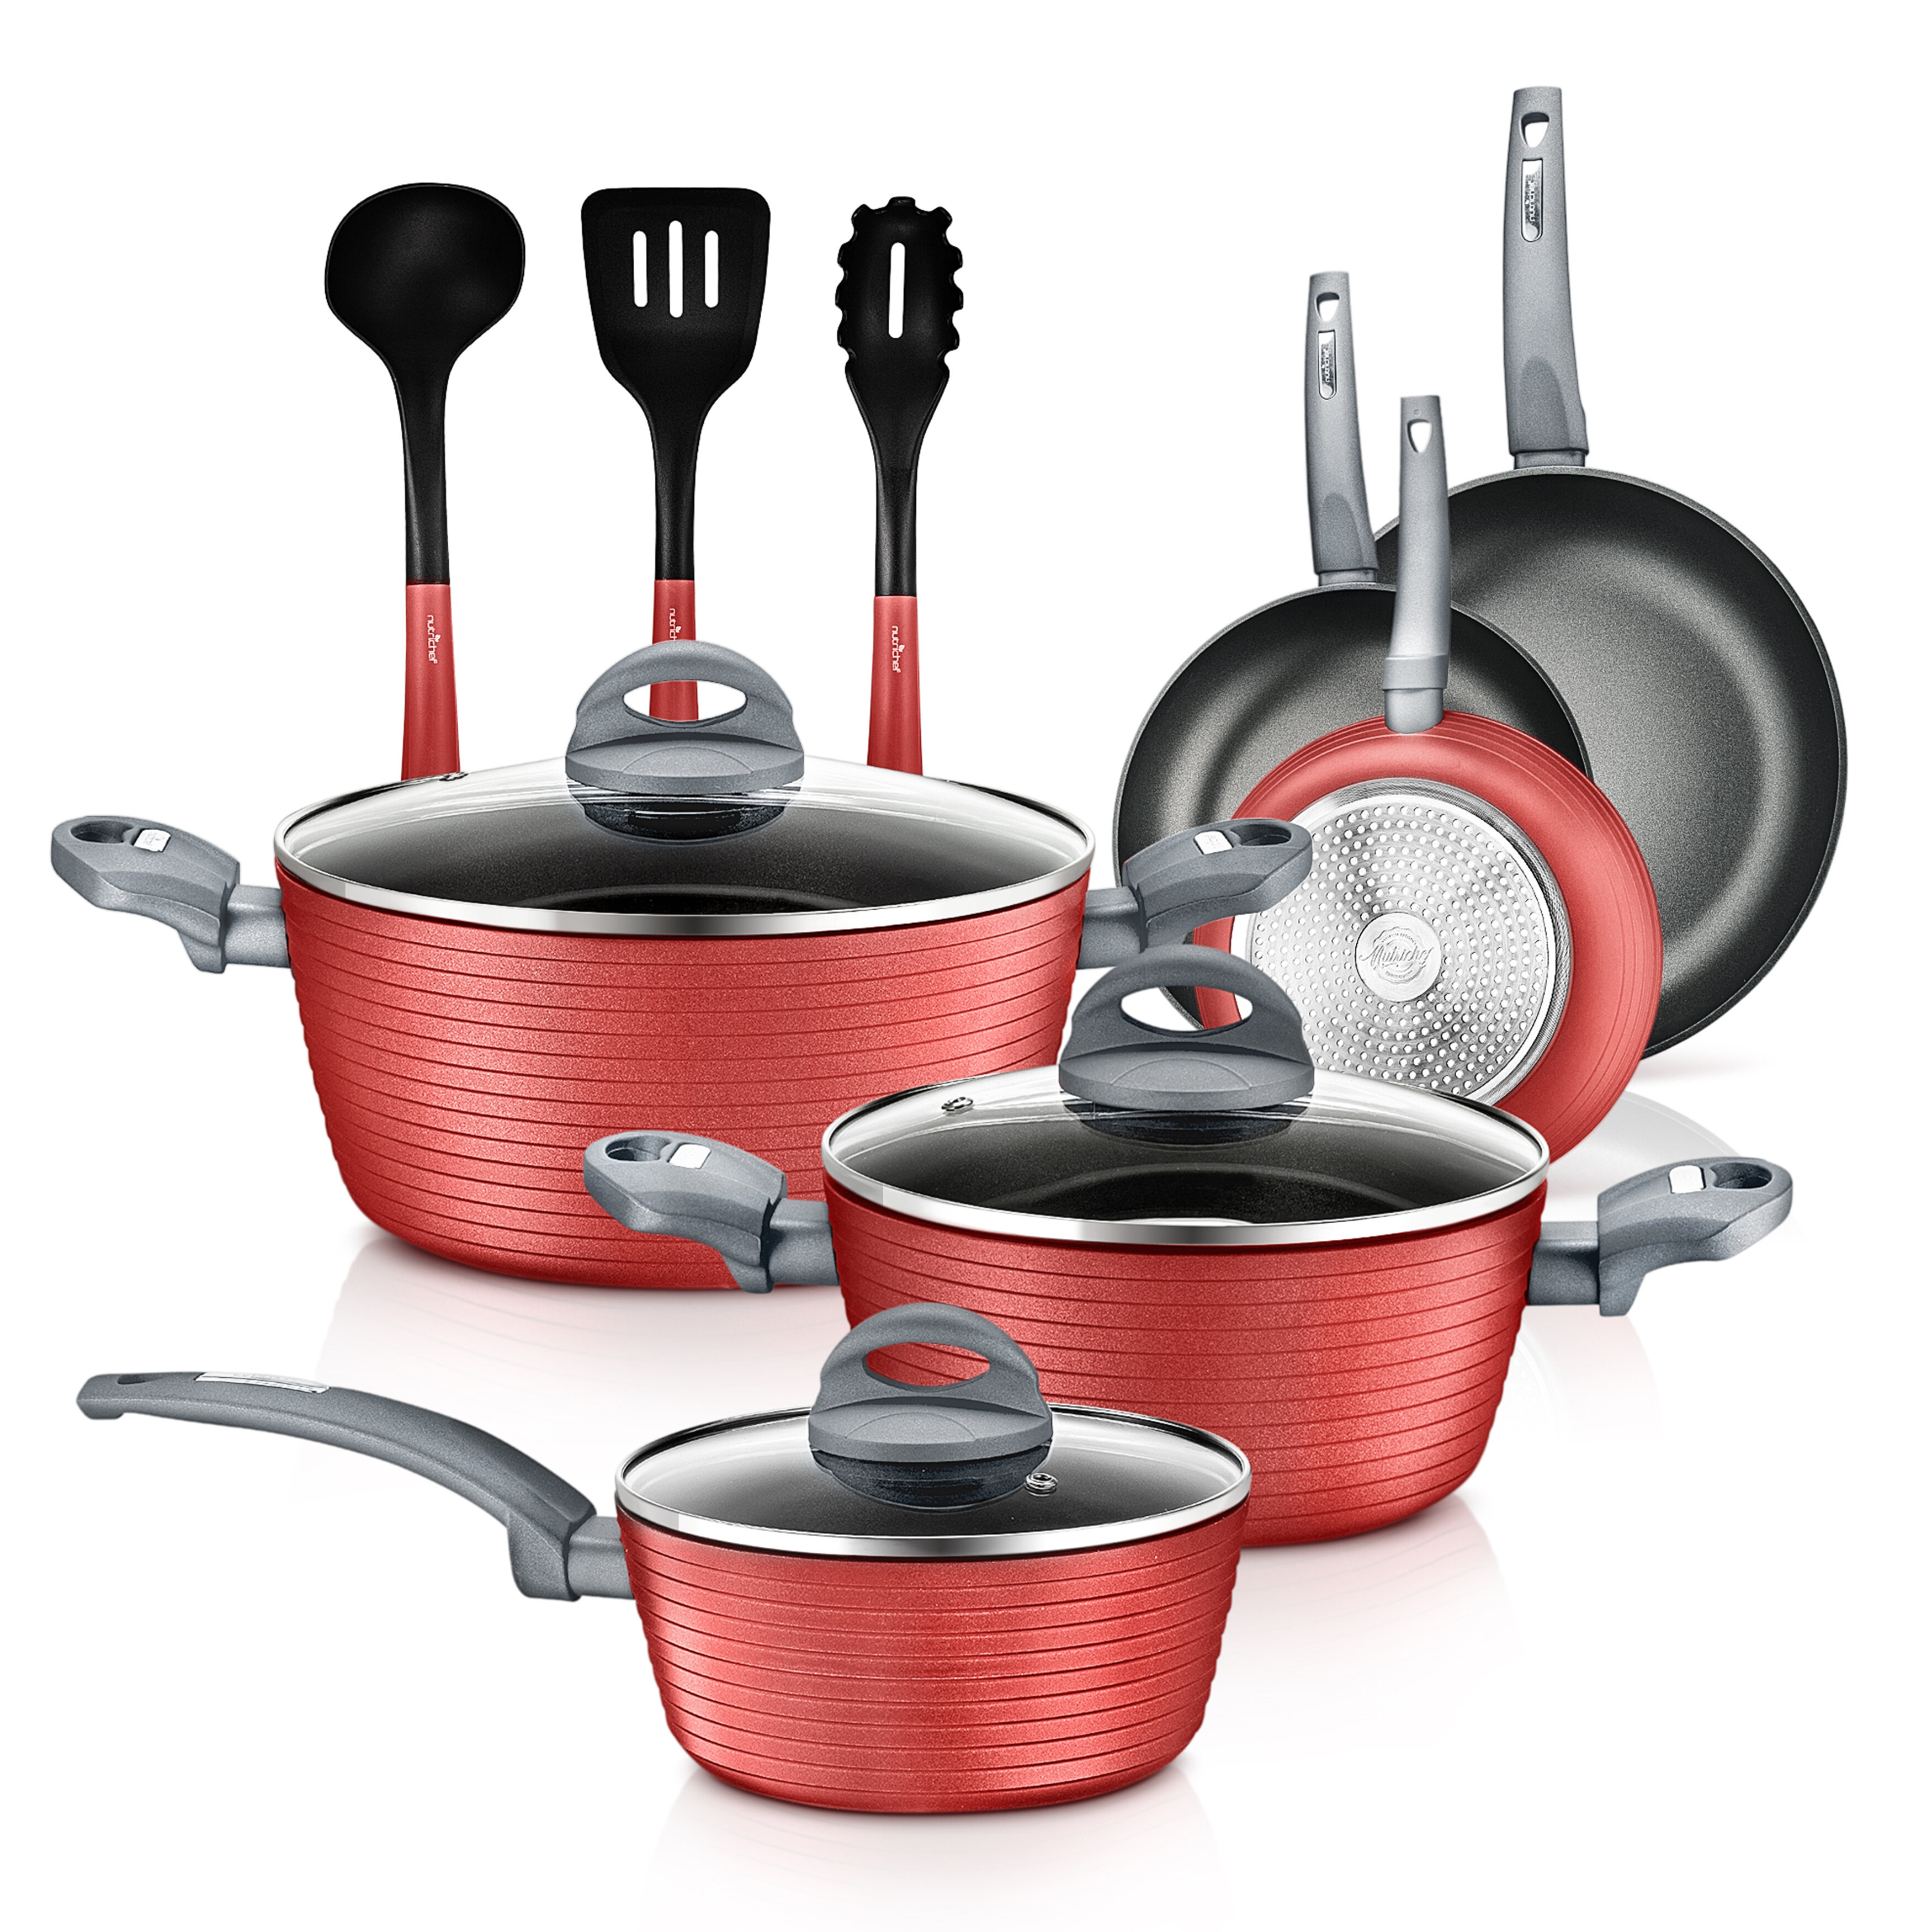 https://assets.wfcdn.com/im/77413137/compr-r85/1330/133006367/12-piece-non-stick-aluminum-cookware-set.jpg